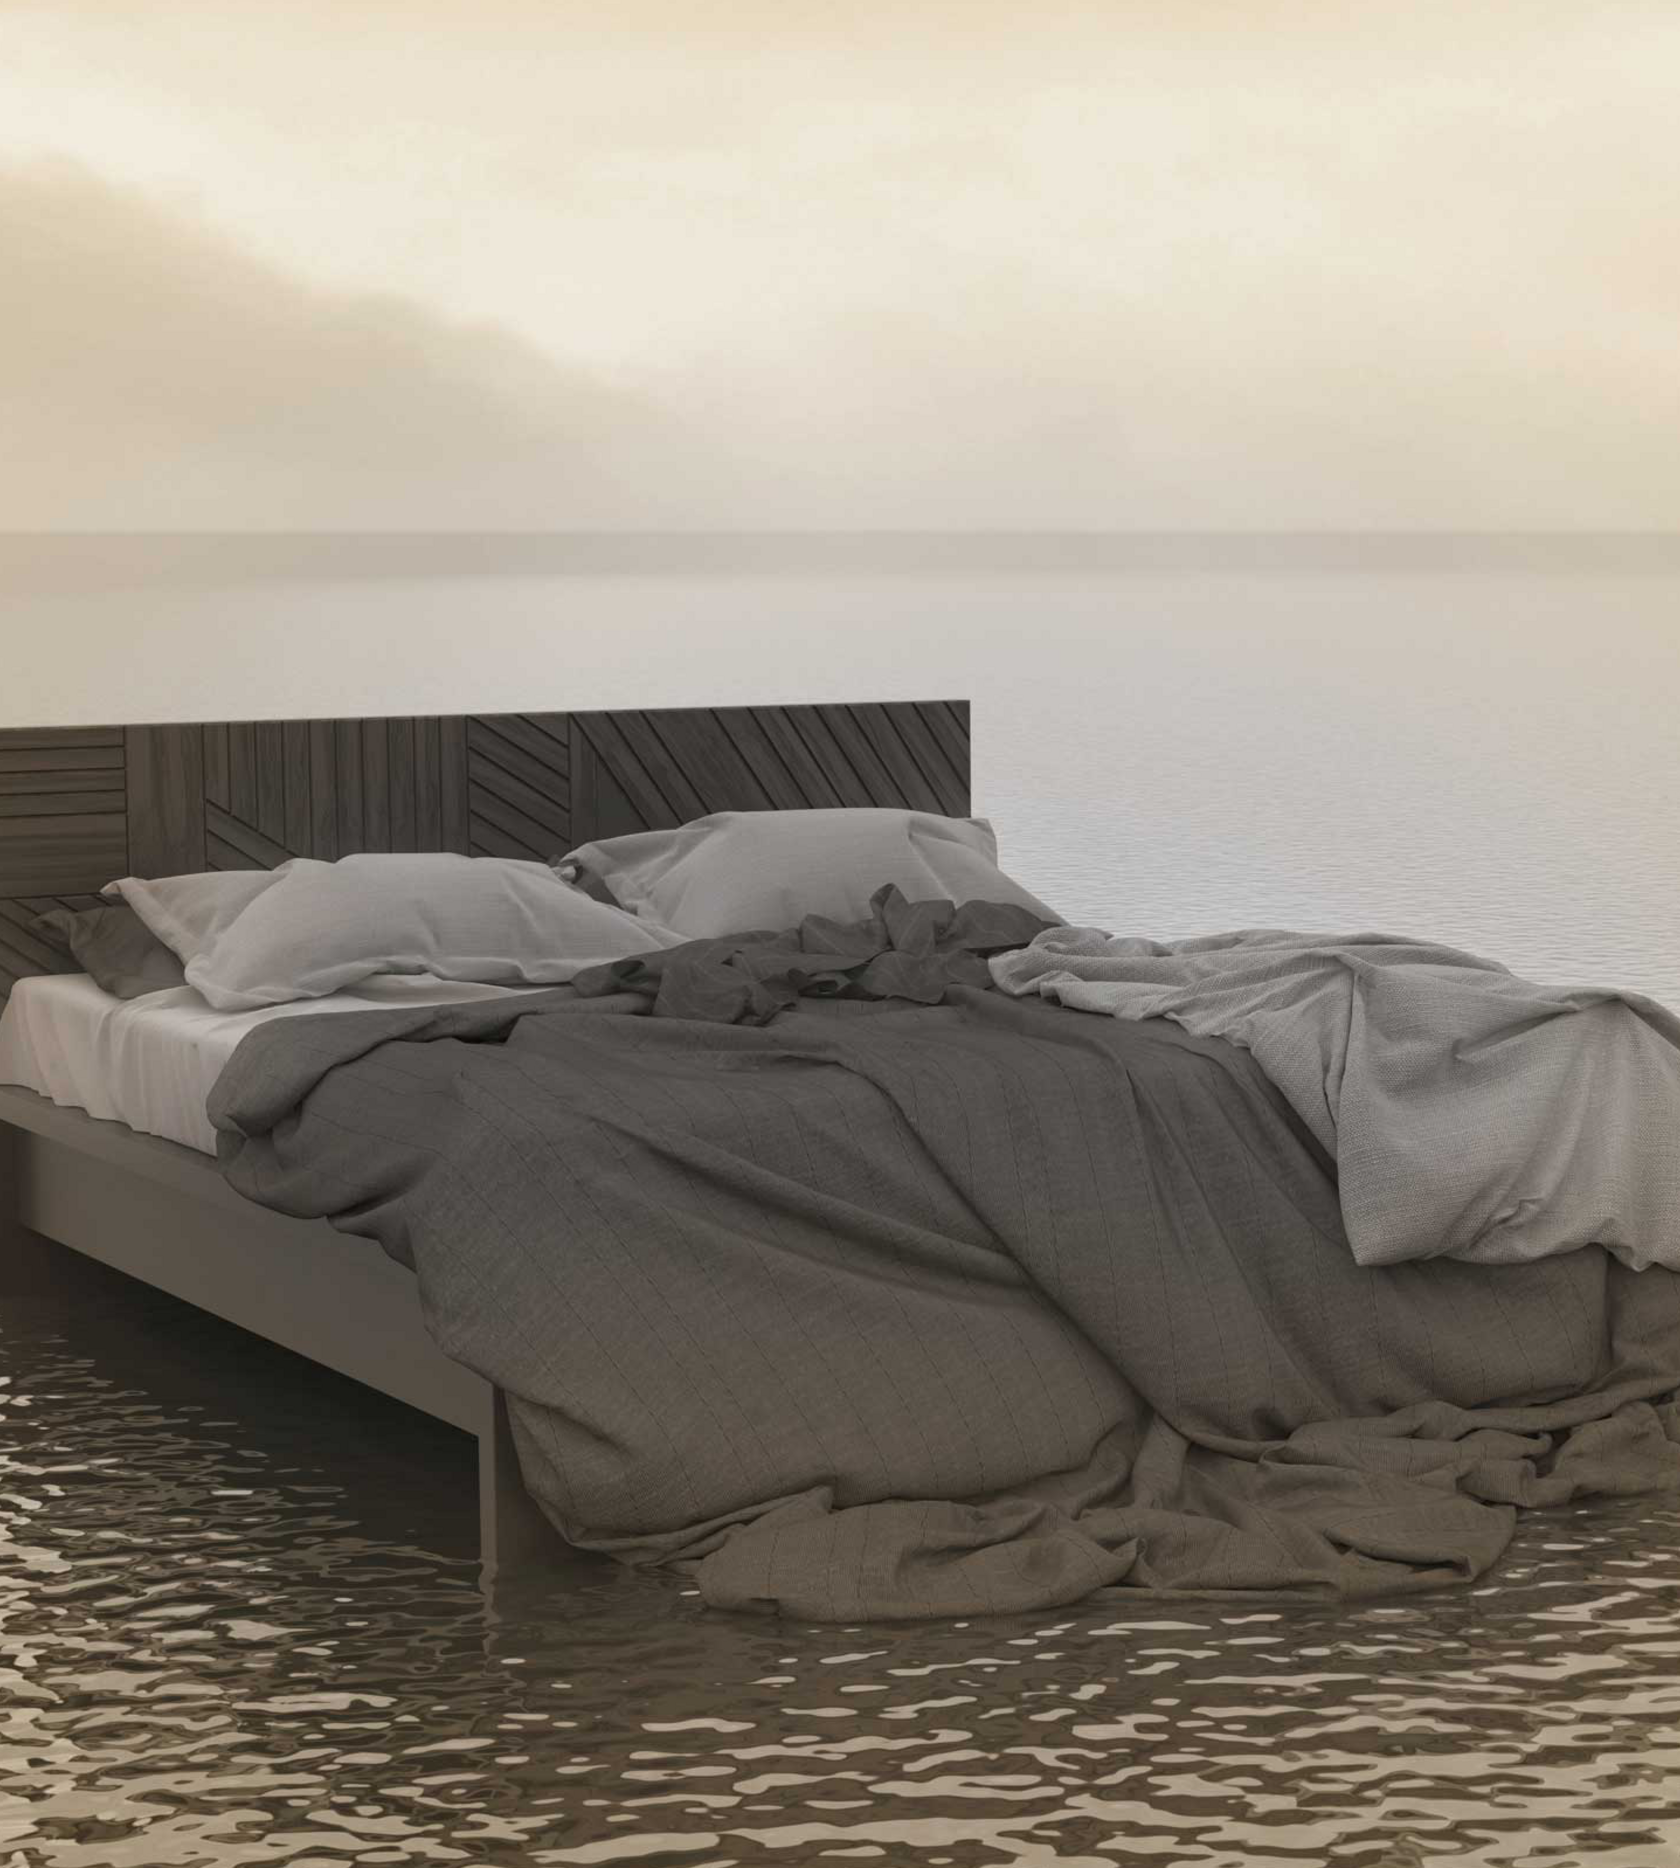  Ein Bett mit aufgewühlten Laken steht inmitten von Wasser